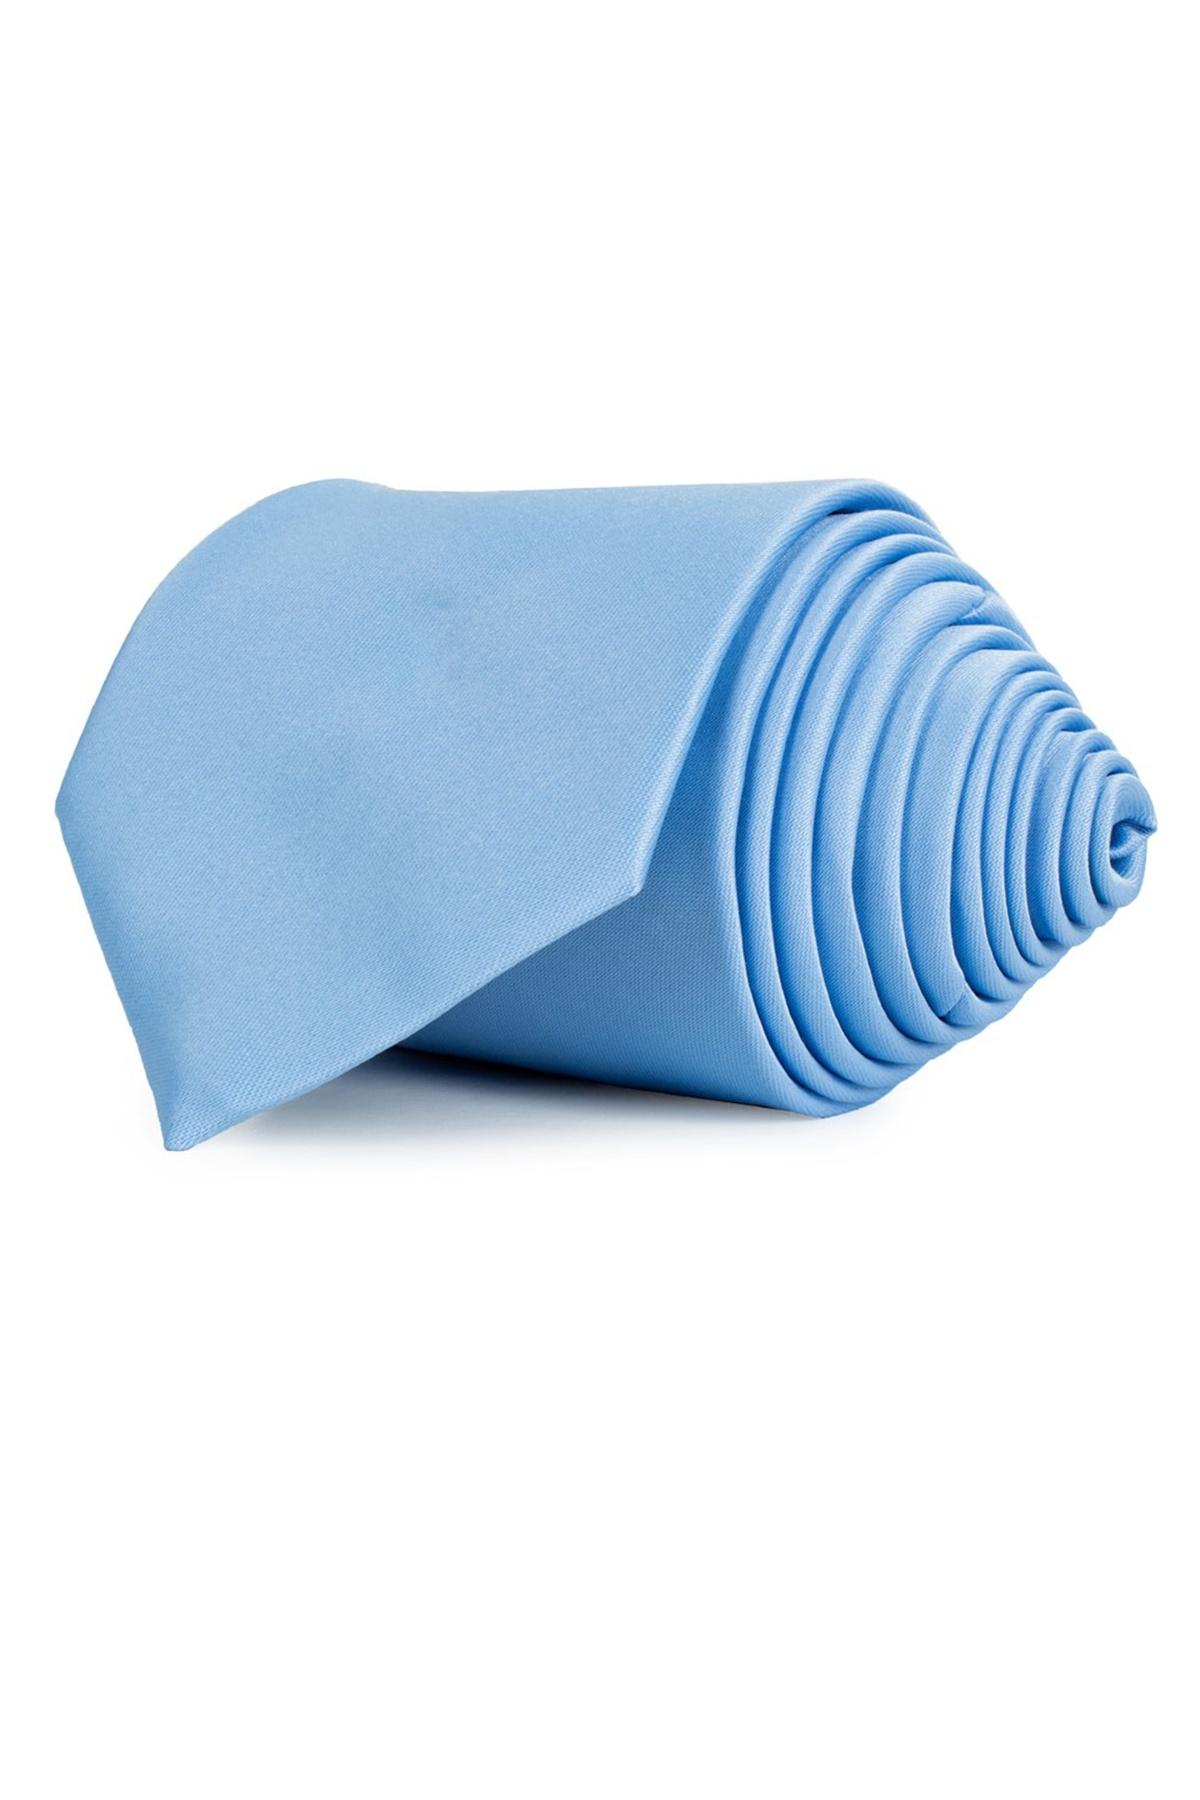 Selected image for TUDORS Klasična kravata plava